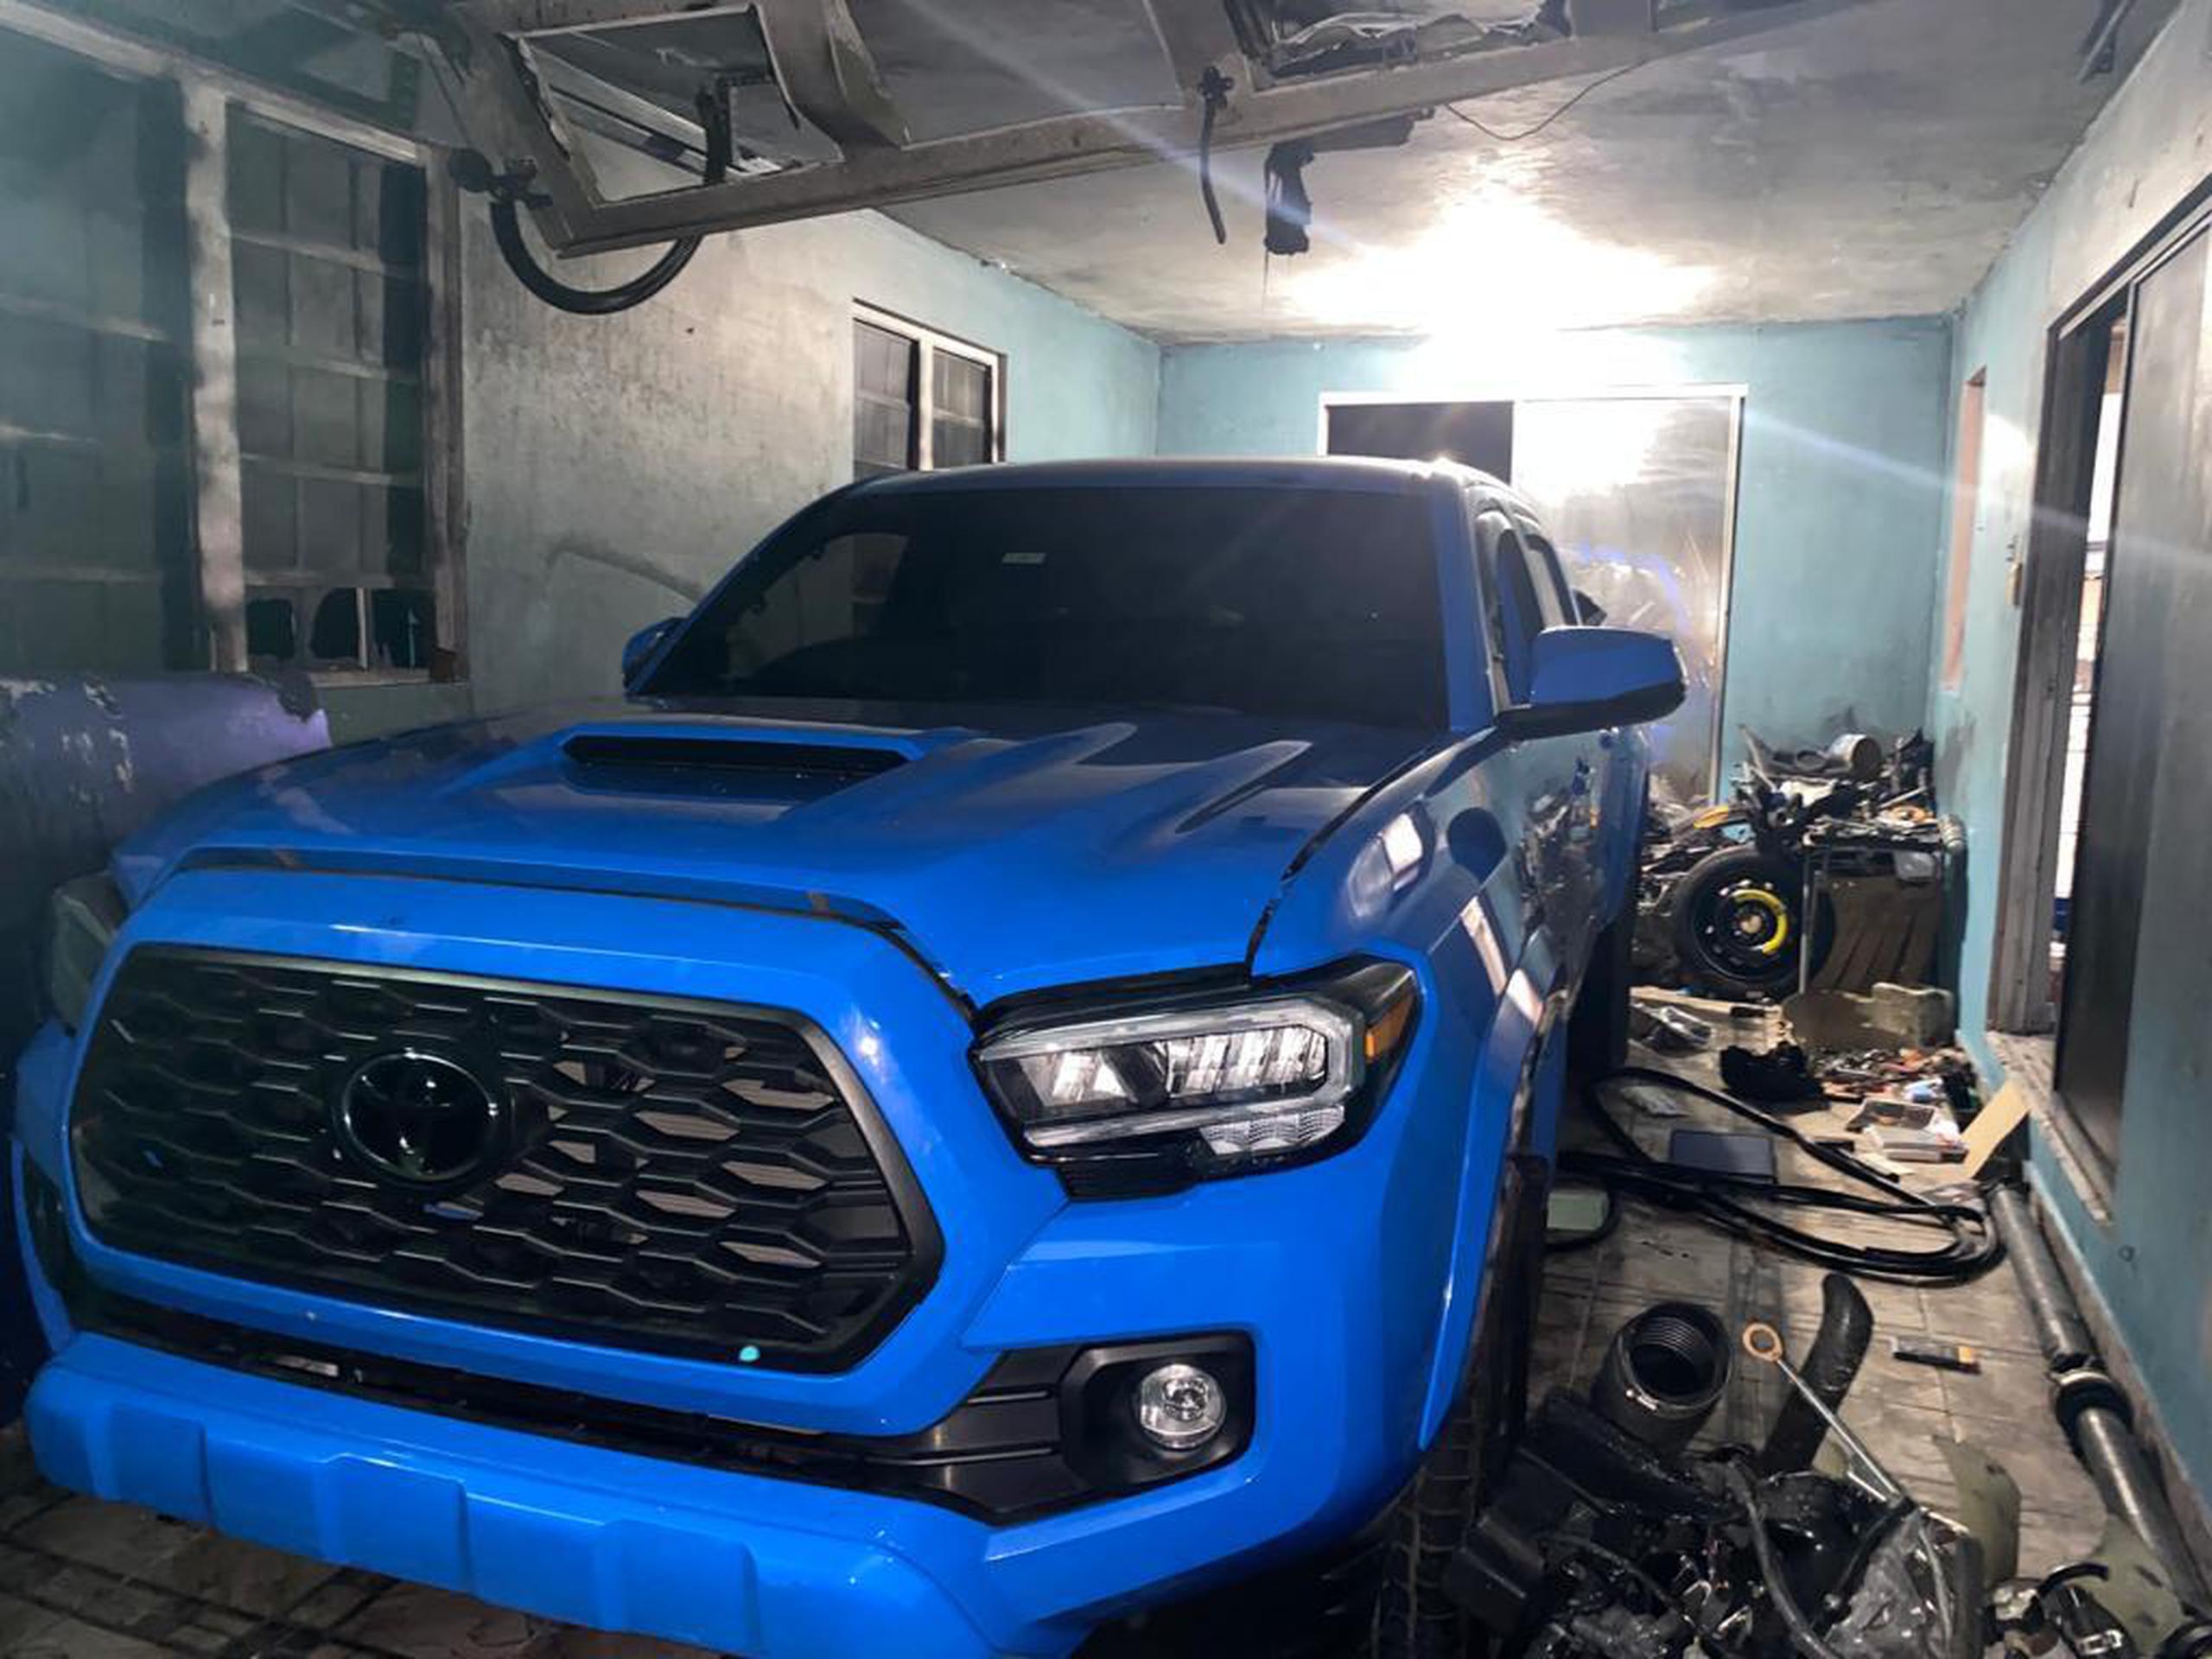 La Policía halló una Toyota Tacoma azul que fue reportada como hurtada el pasado jueves, 1 de septiembre.